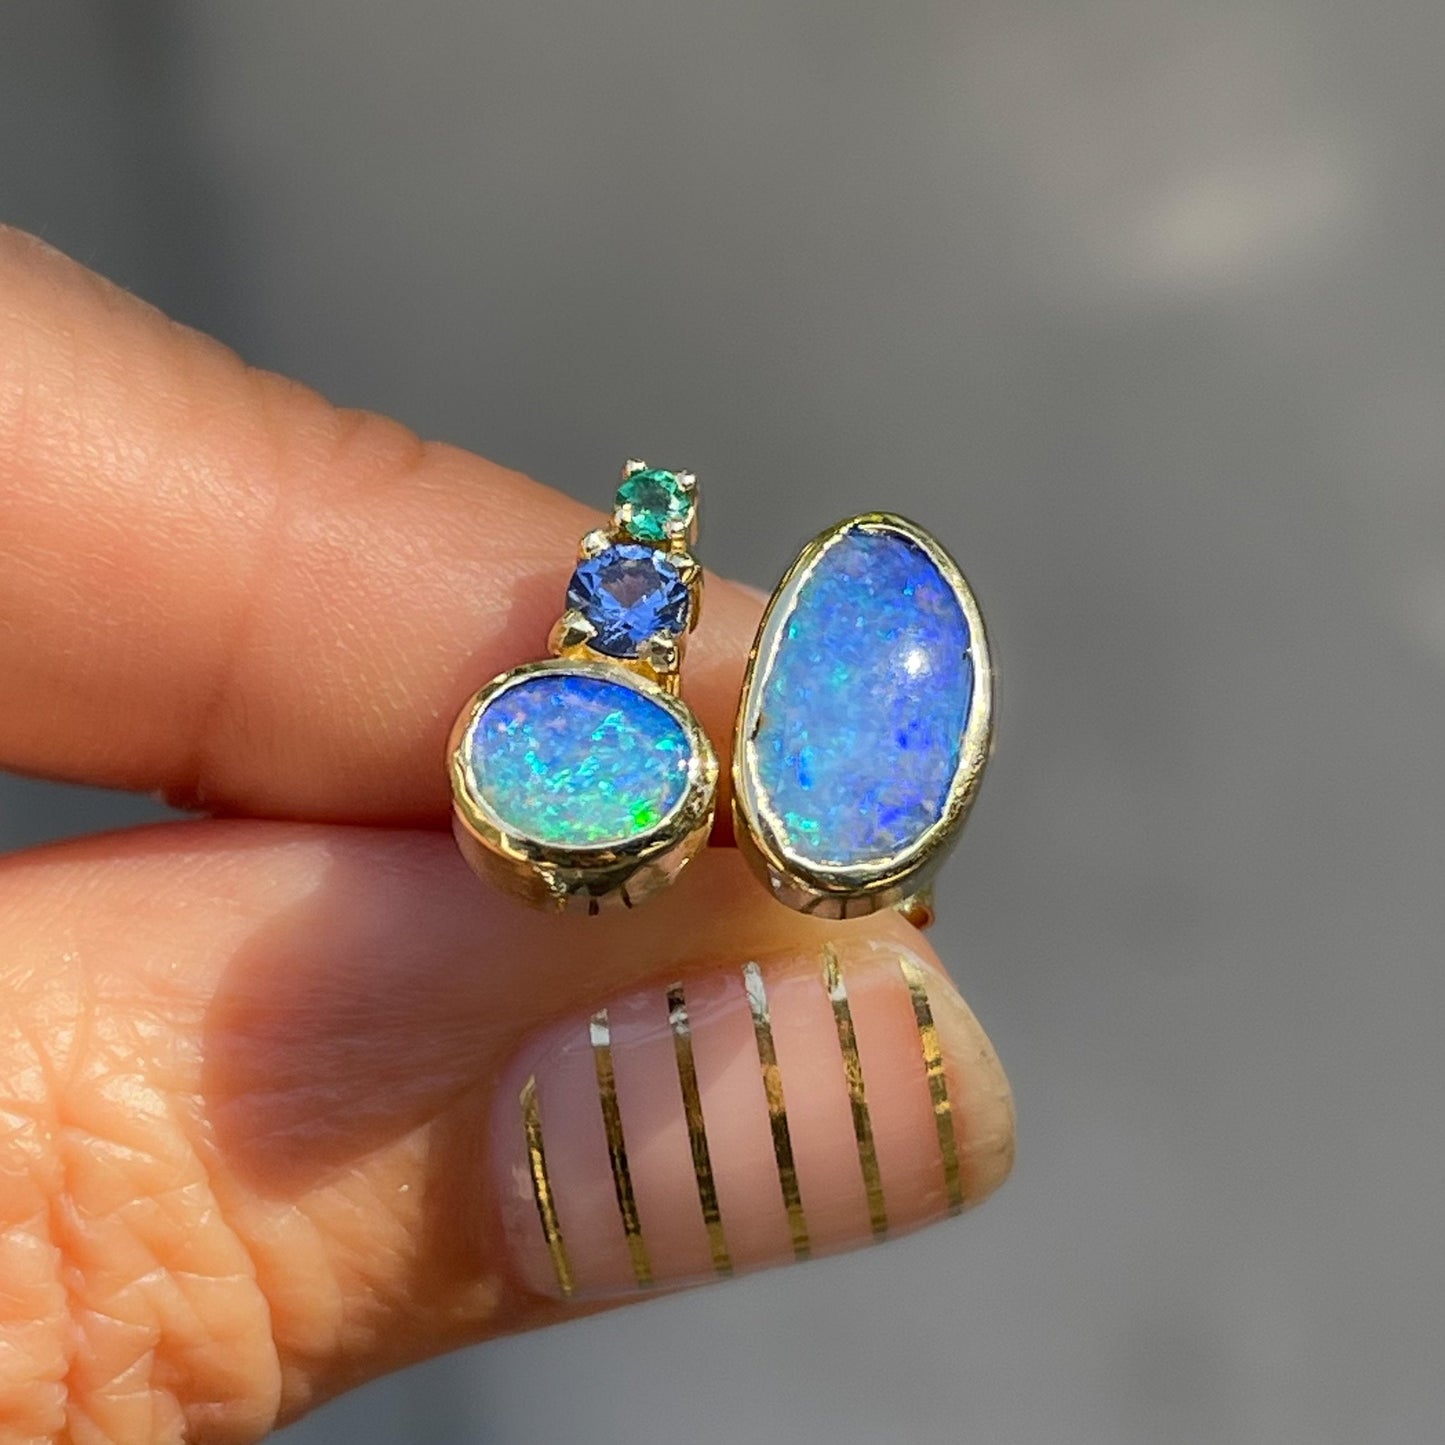 Blue green opal stud earrings in 14k gold by NIXIN Jewelry